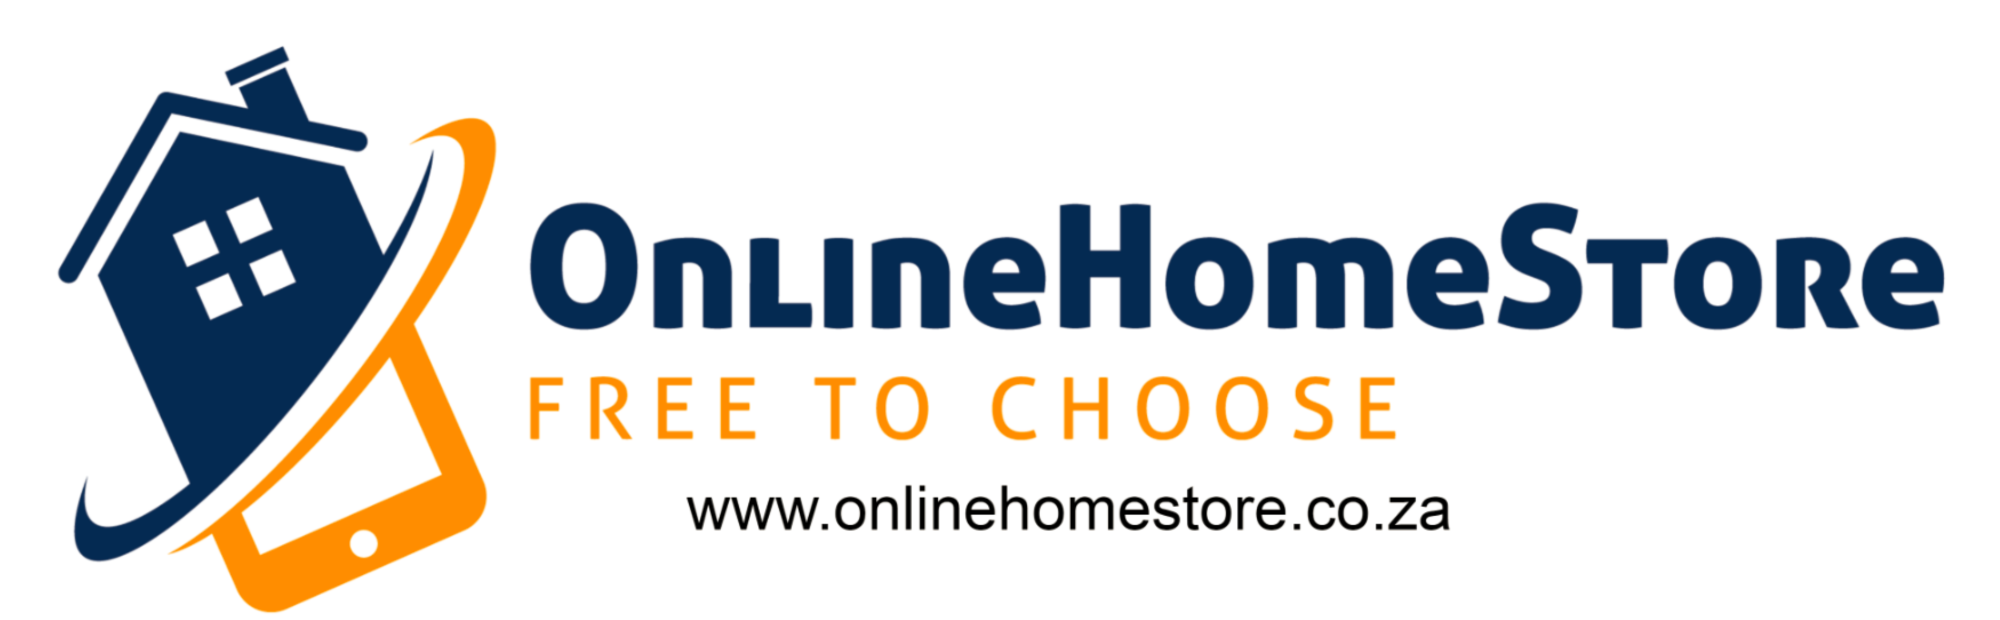 OnlineHomeStore.co.za